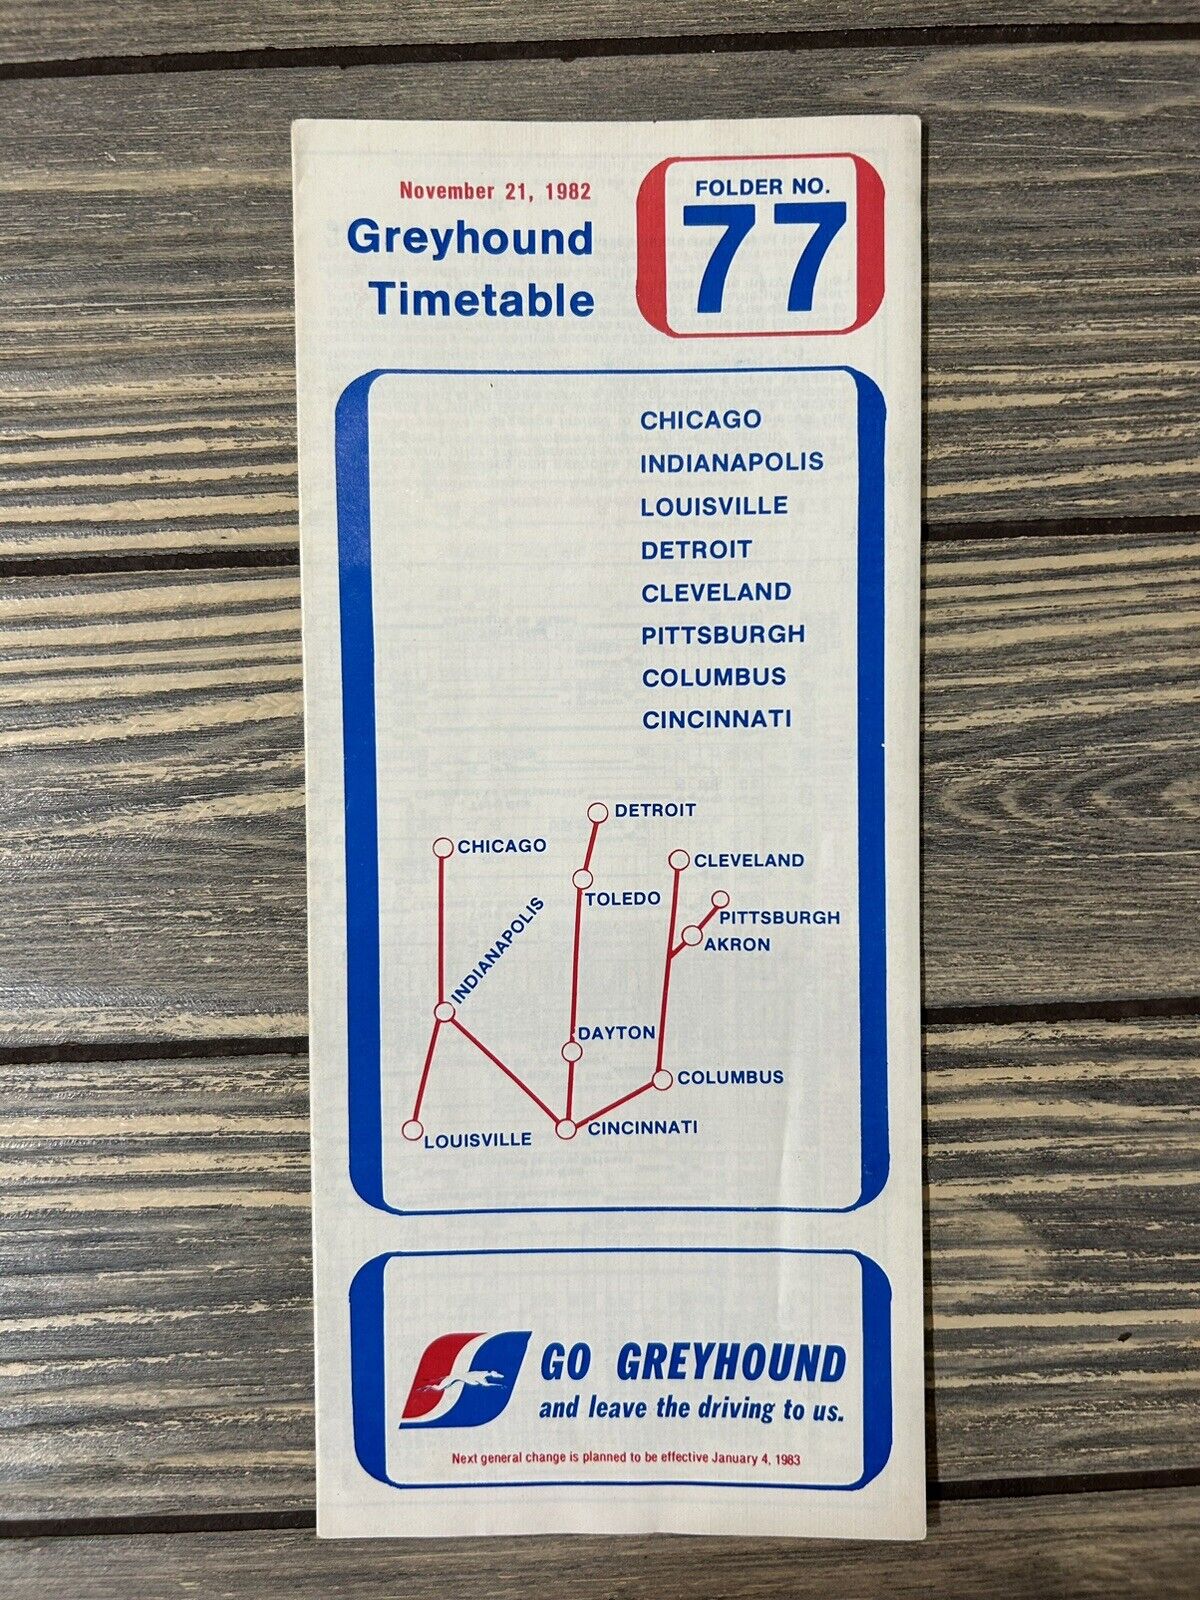 Vintage November 21 1982 Greyhound Timetable Folder 77 Brochure Pamphlet